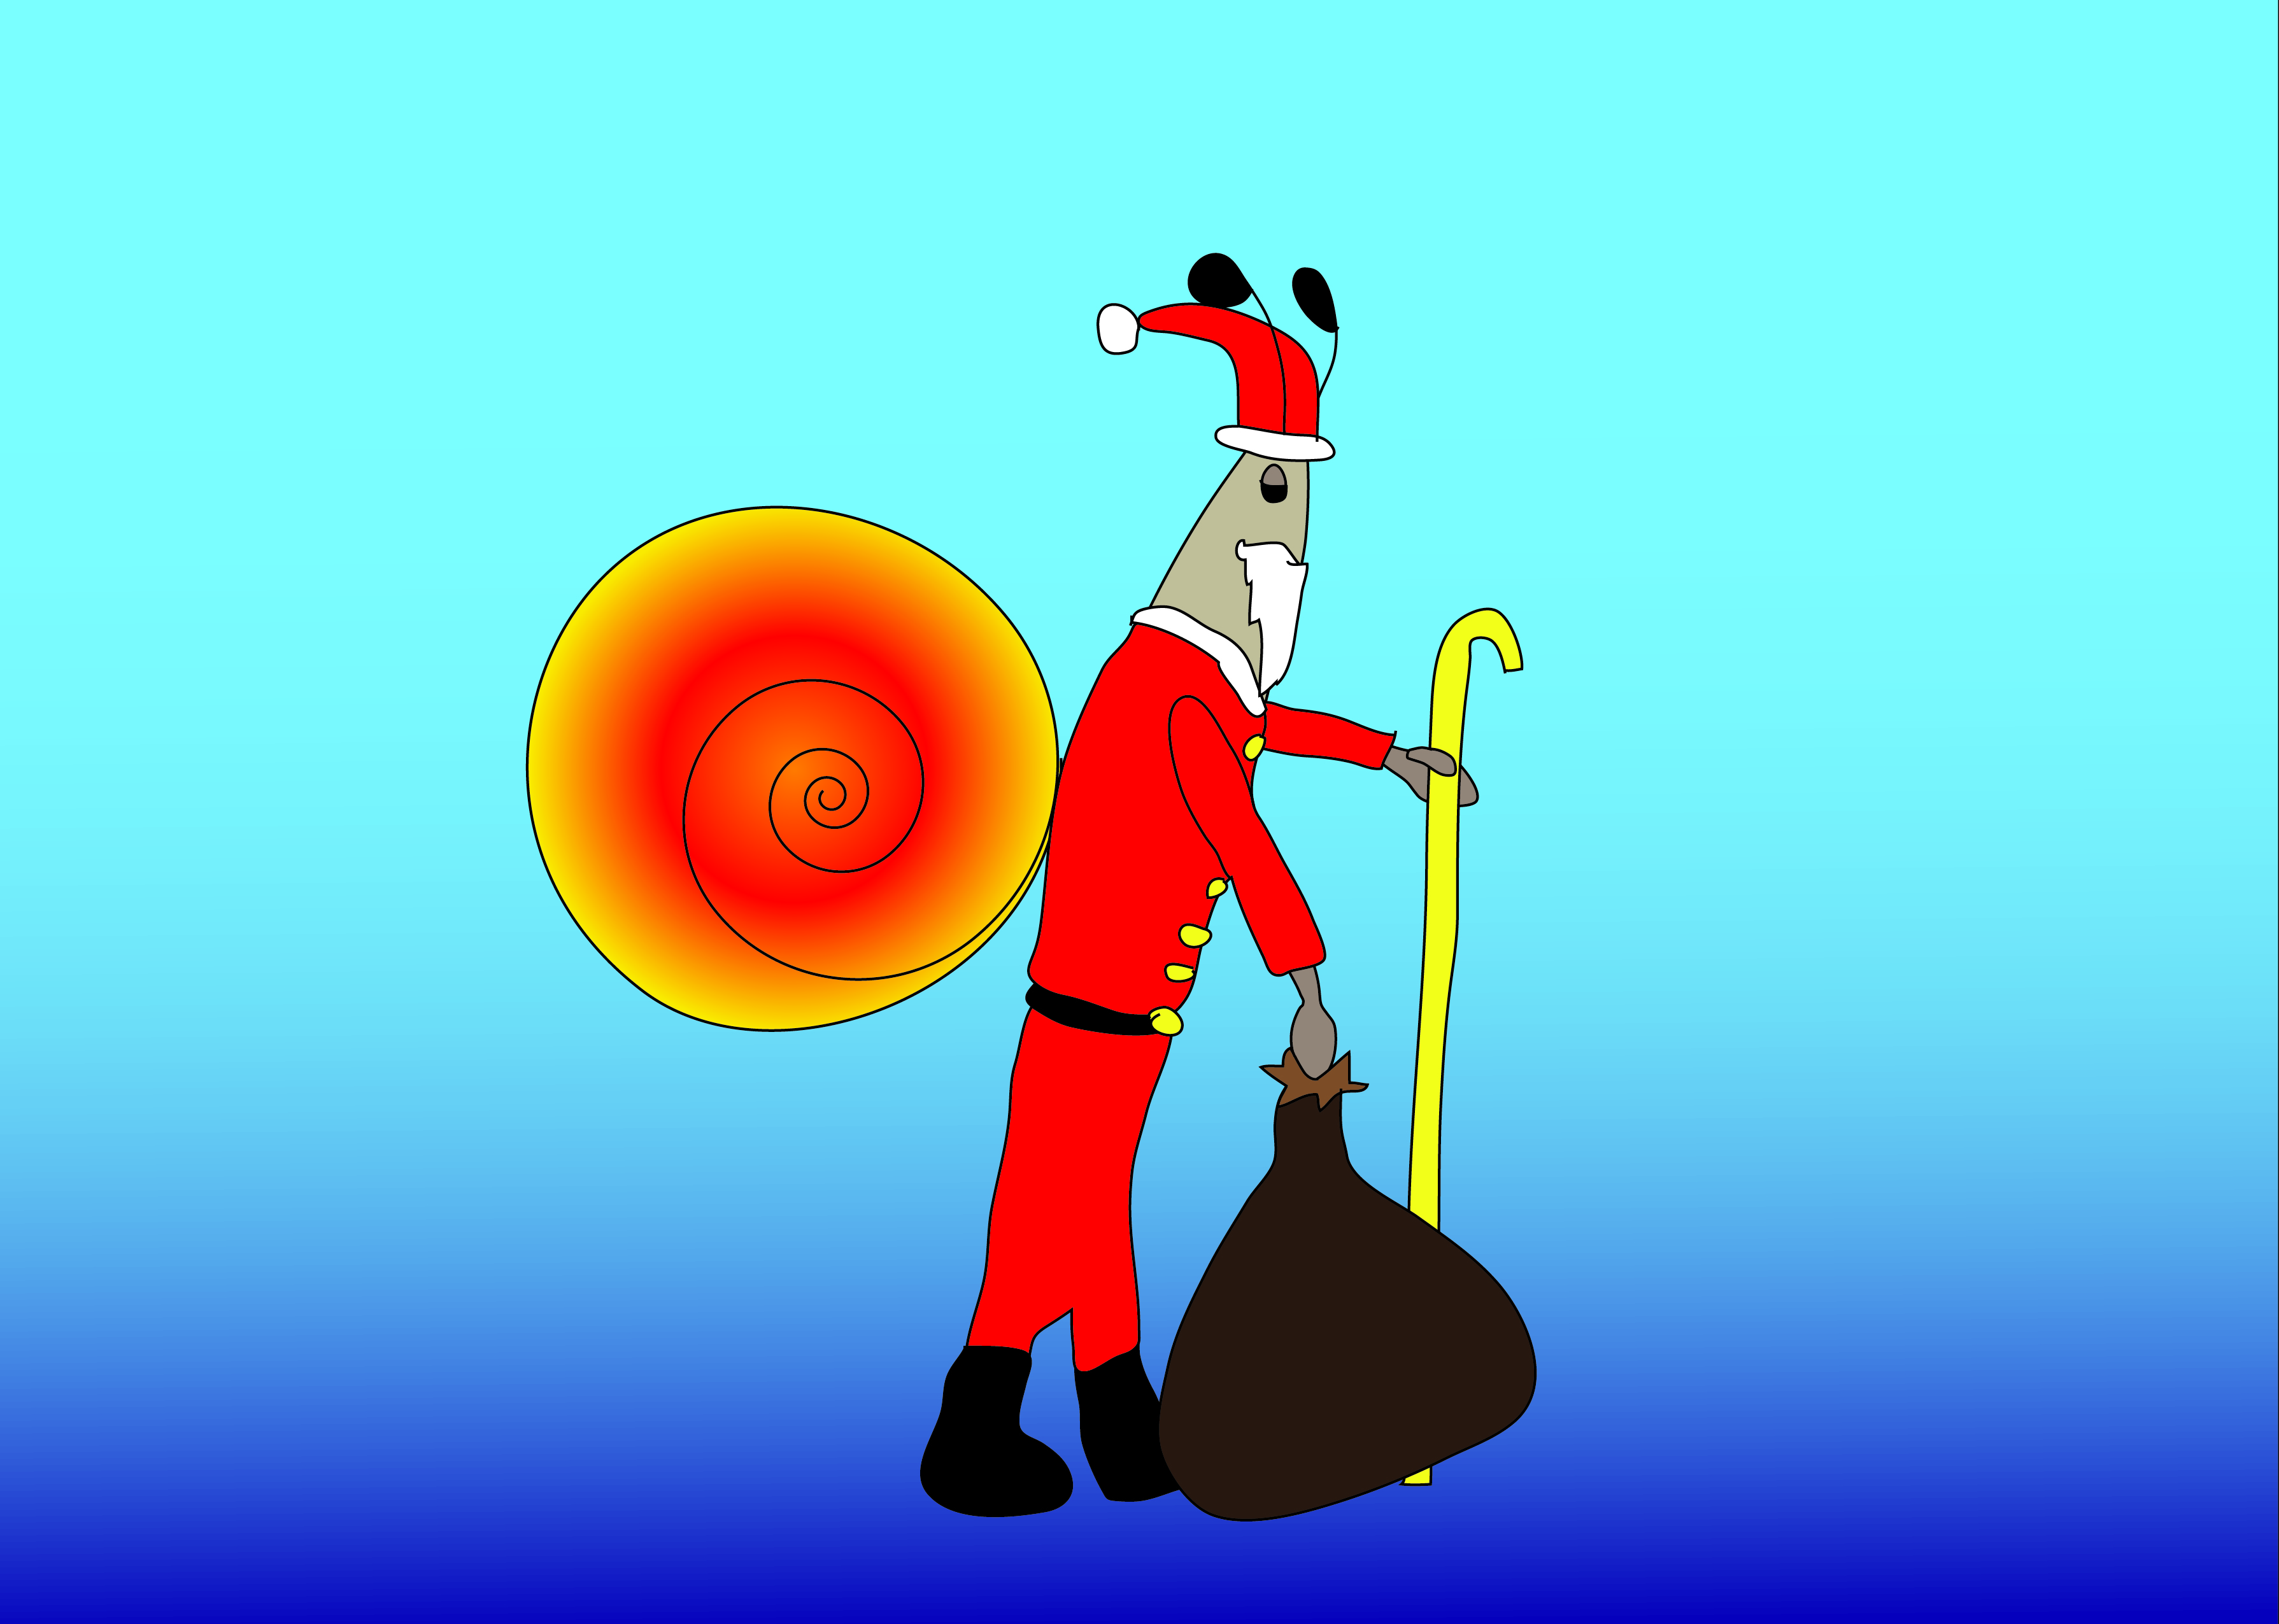 Weihnachtsschnecke: Illustration einer Schnecke als Weihnachtsmann